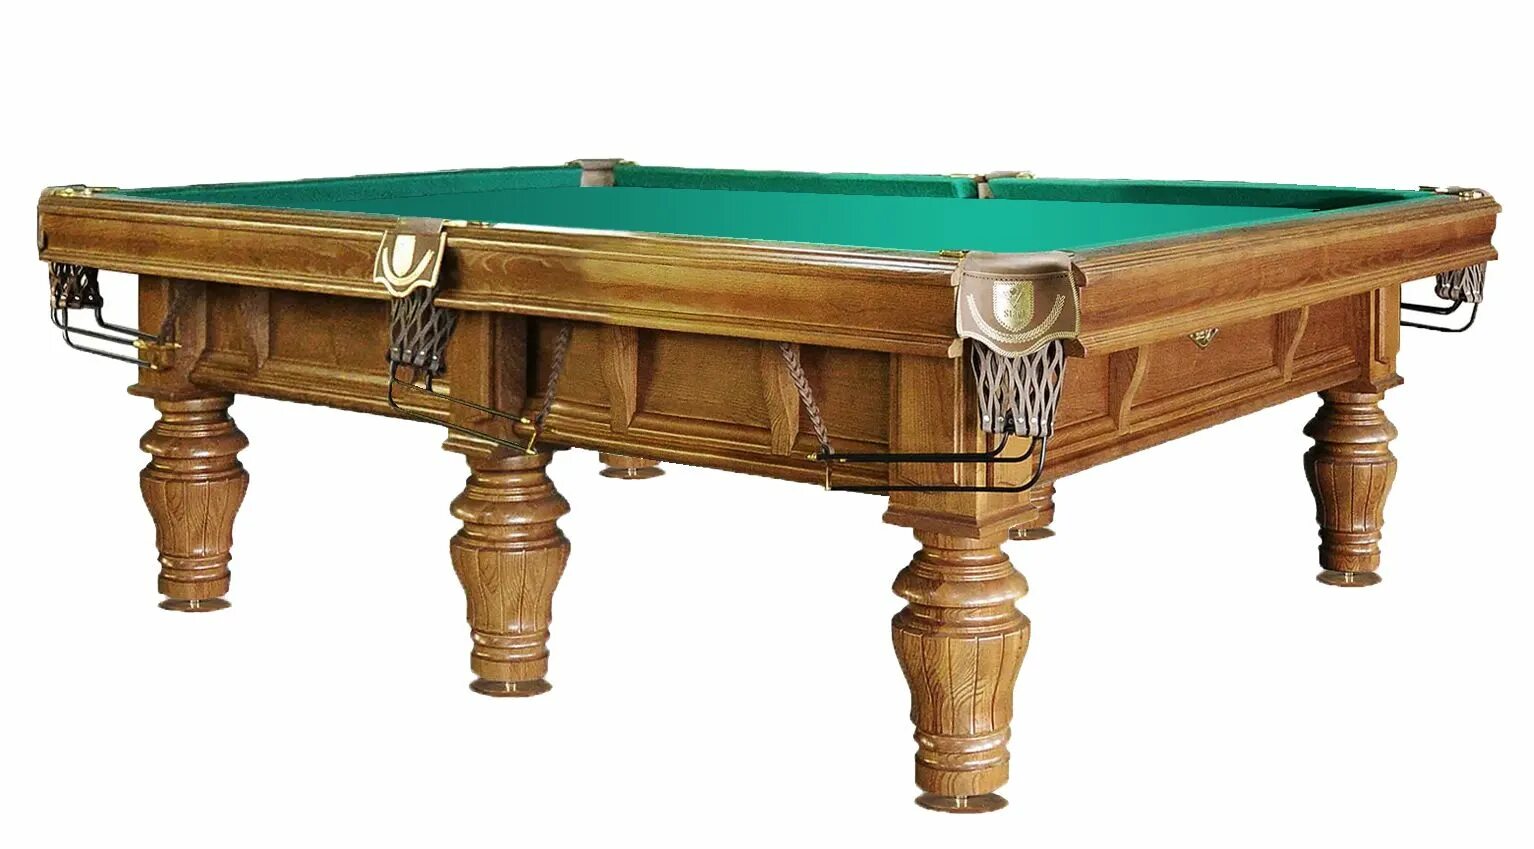 Бильярдный стол 4 фута bm003. Бильярдный стол Billiard-Ball 9 футов (пул). Бильярдный стол ”Камелот” пул. Бильярдный стол спб